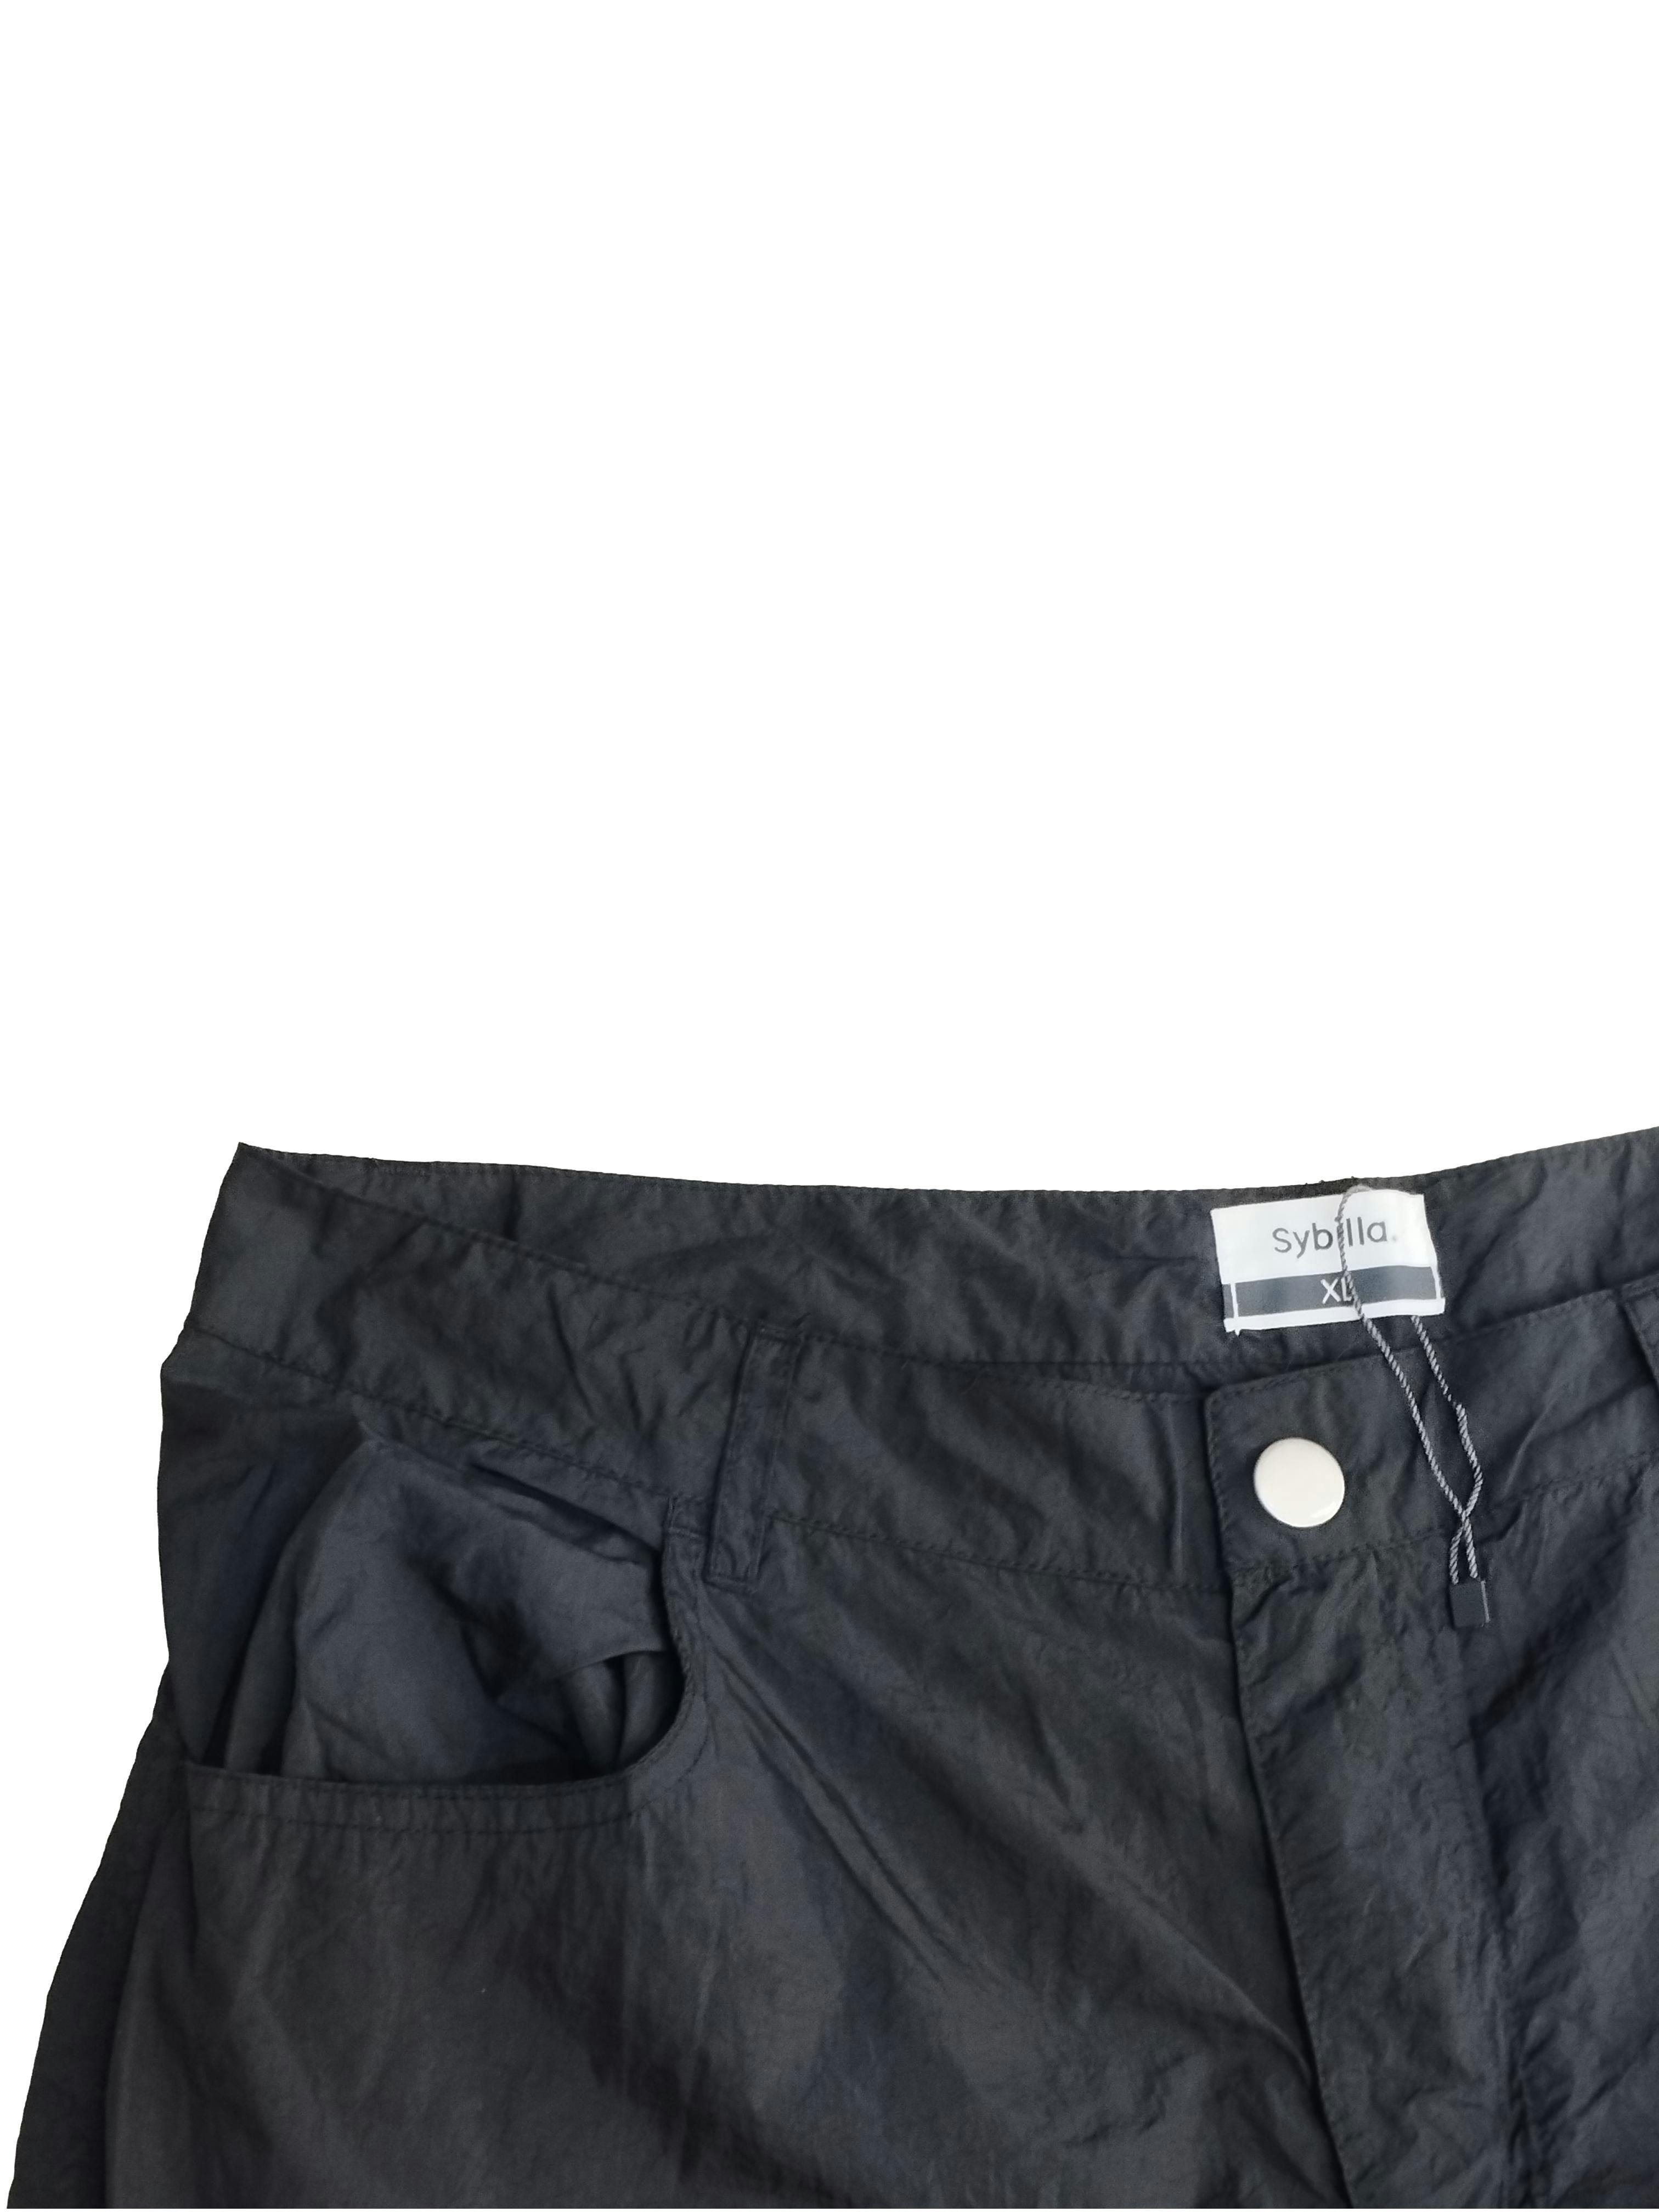 Pantalón Sybilla negro, tela tipo impermeable, bolsillos amplios delateros, broche y cierre, pierna ancha. Cintura: 84 cm, Tiro: 30 cm, Largo: 105 cm. SM